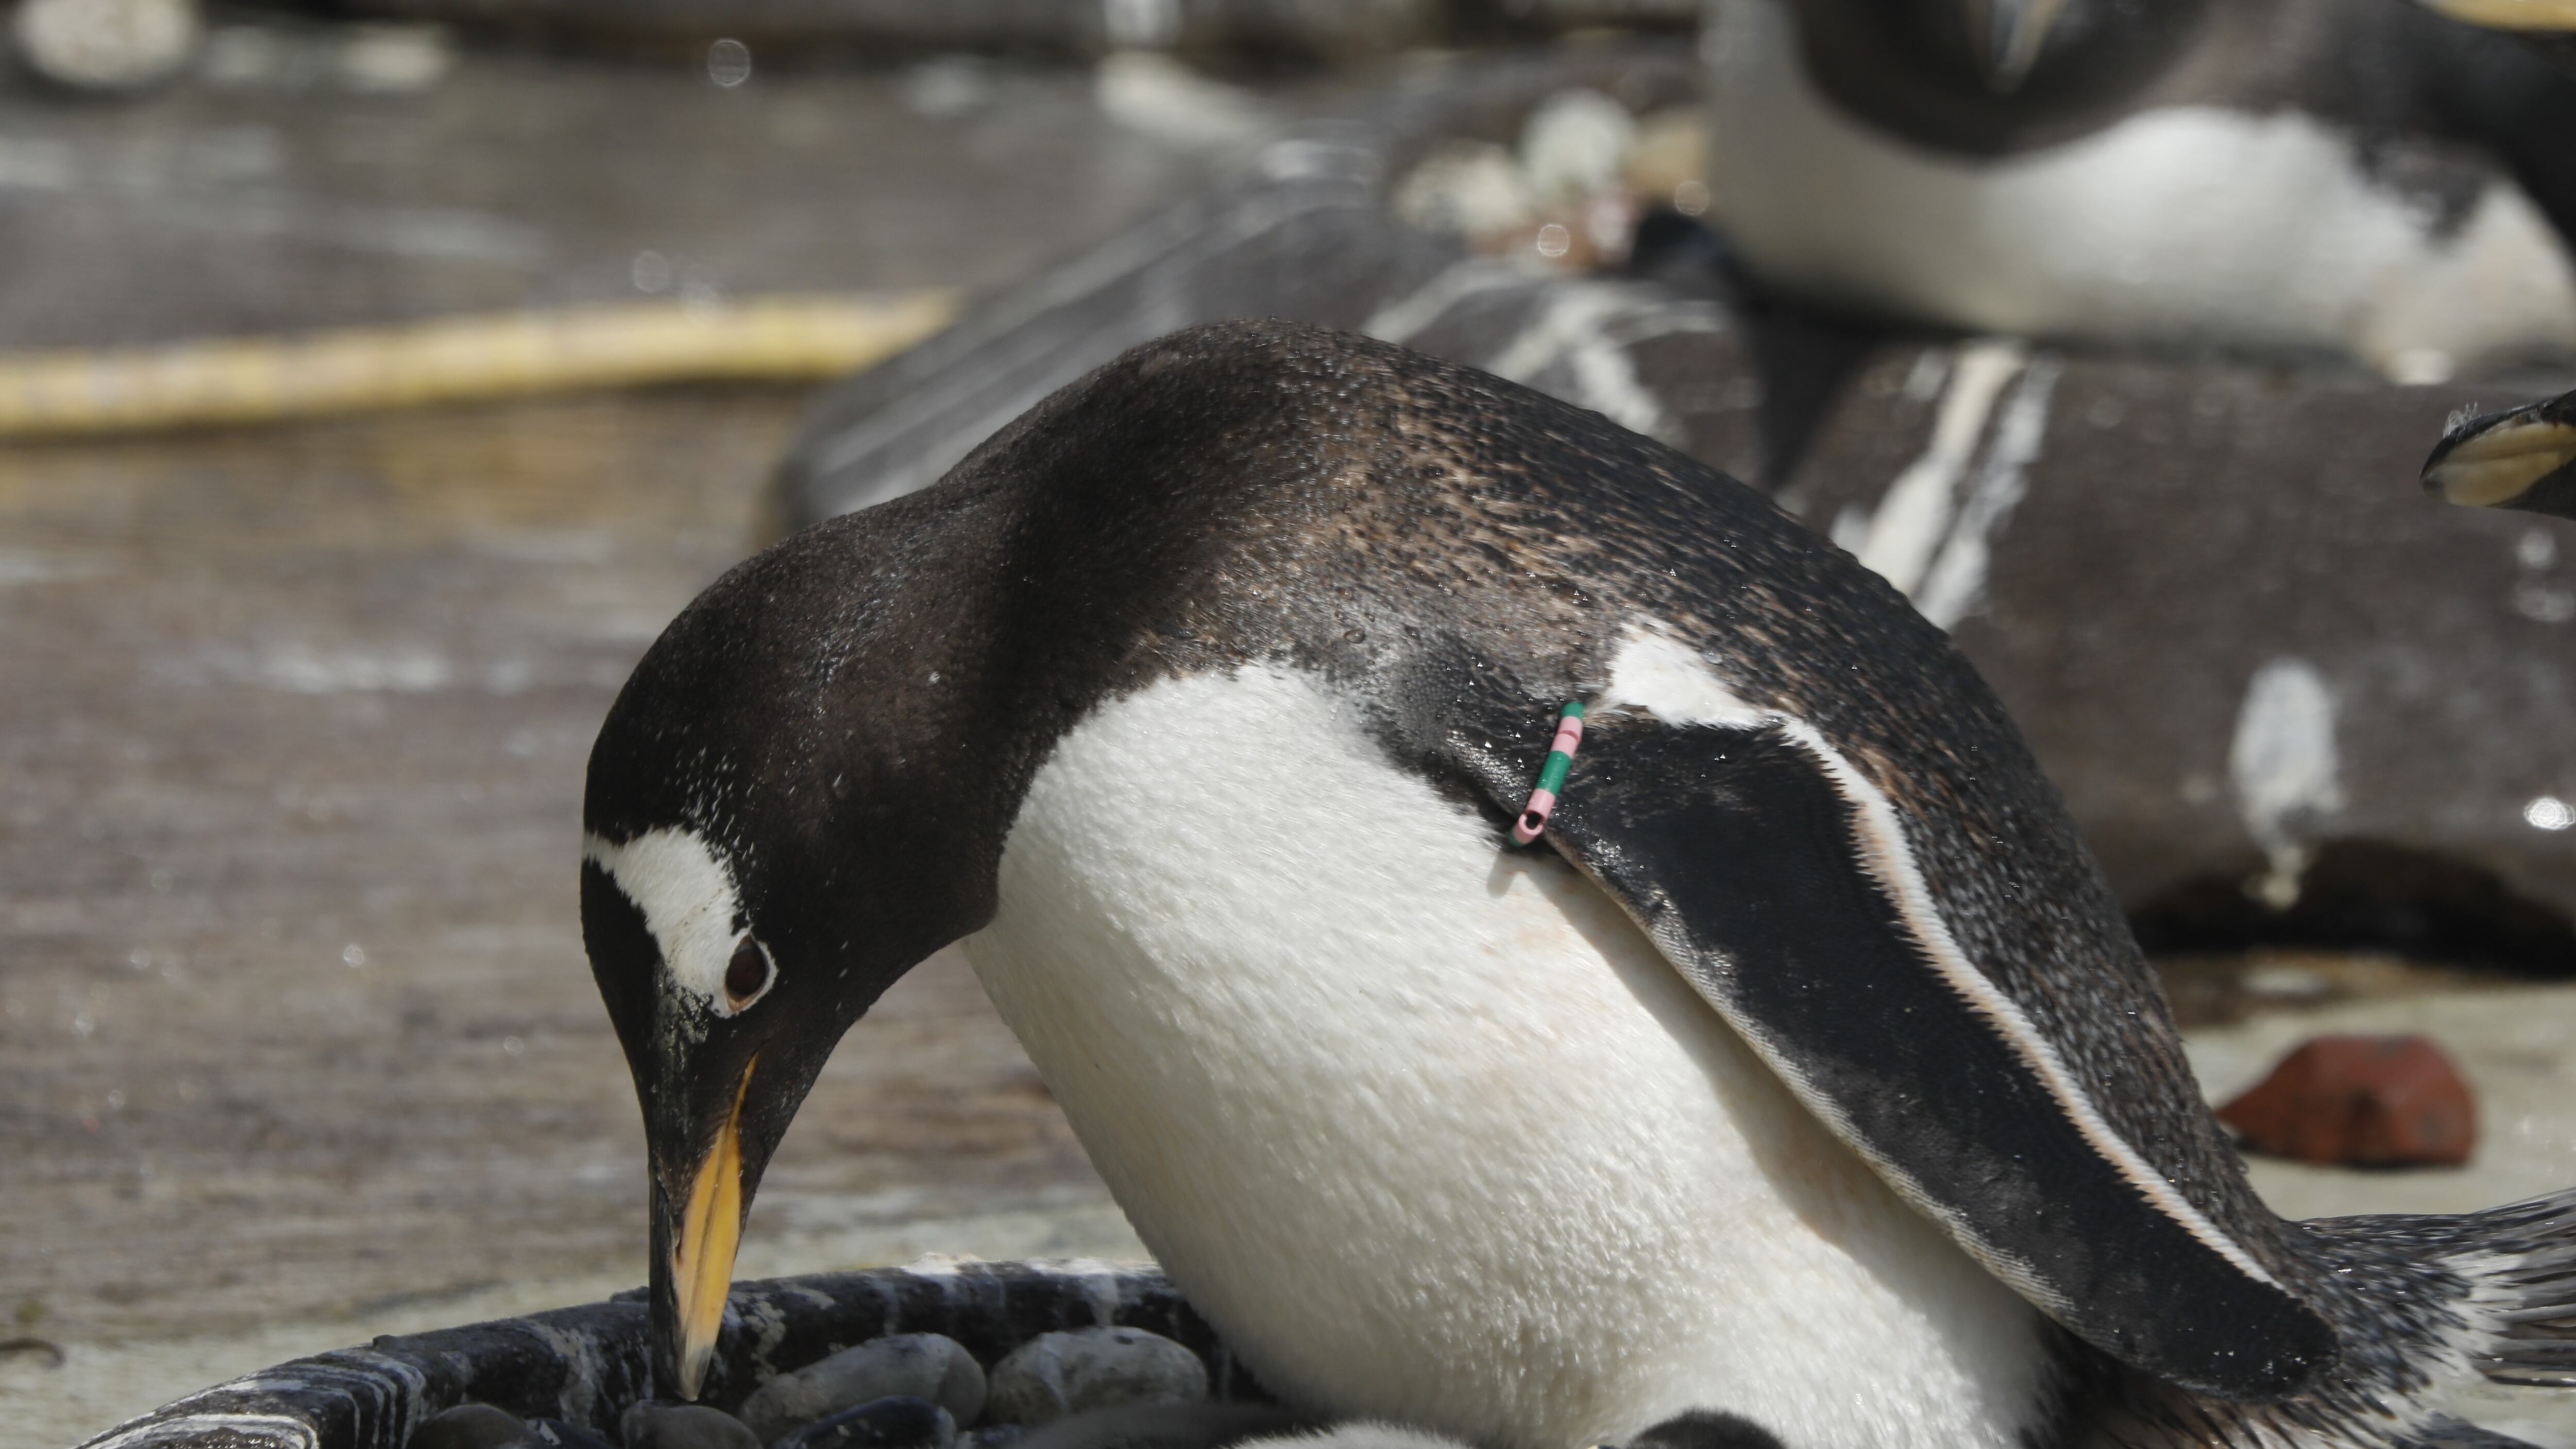 Gentoo penguin Muffin nurtures her newborn chick at Edinburgh Zoo